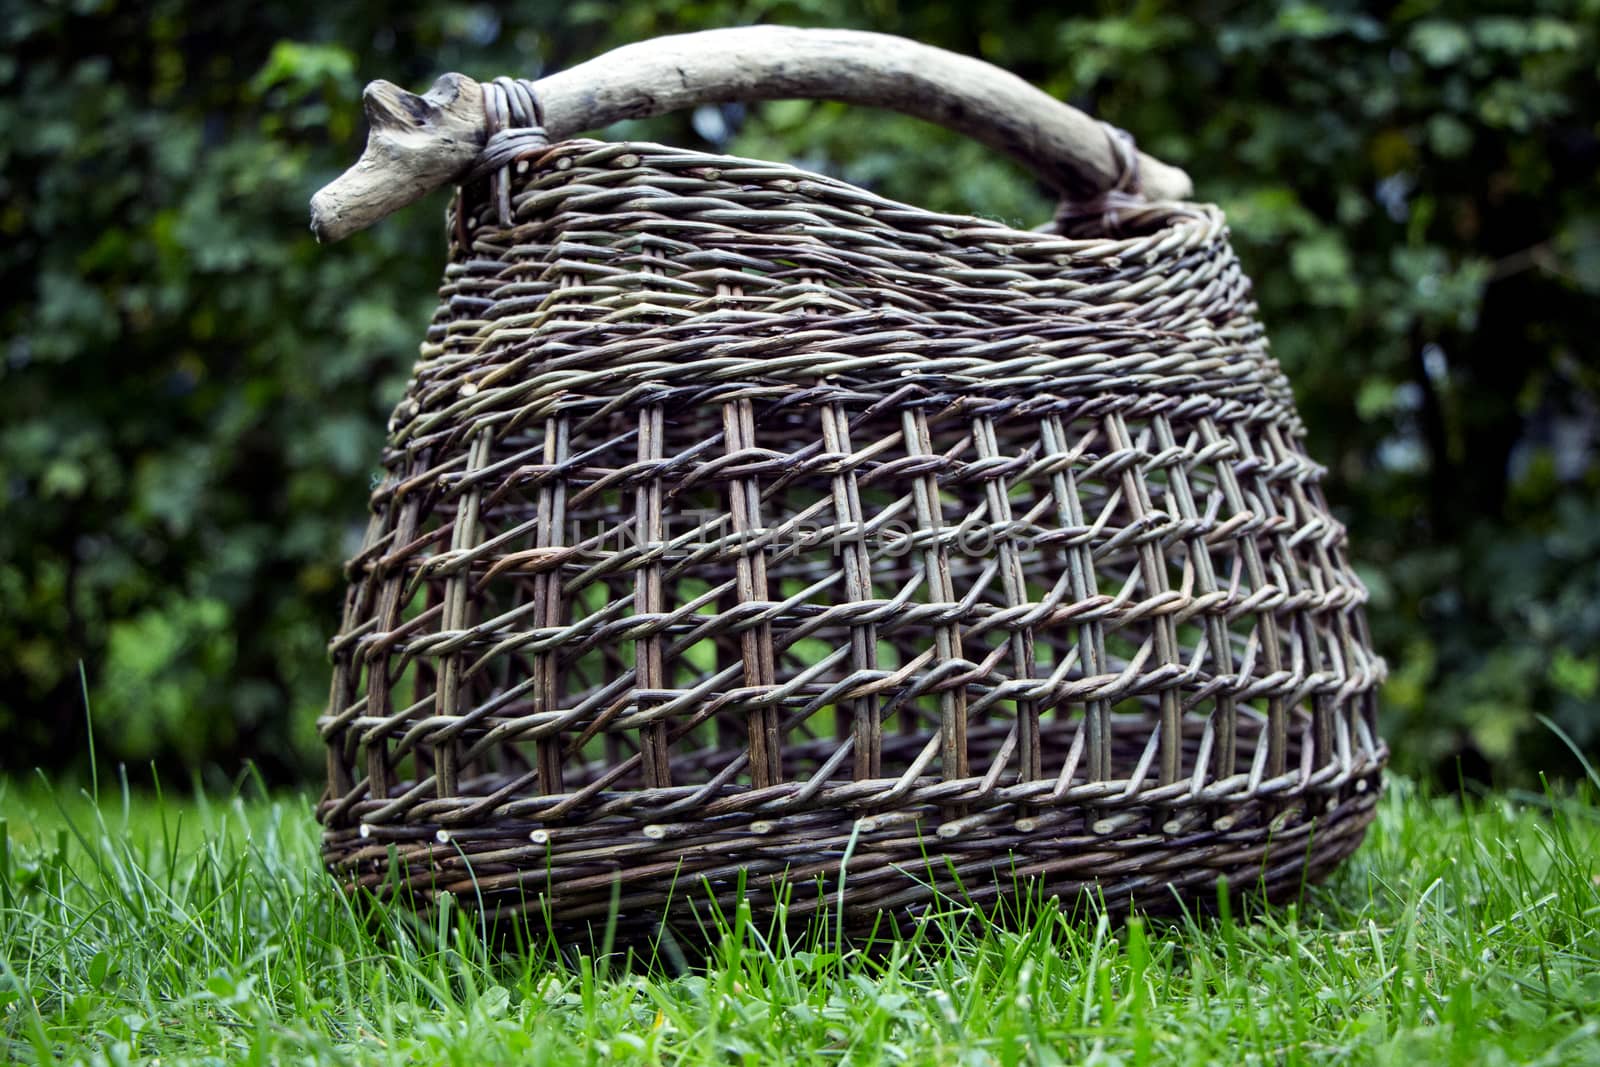 Basket Of Wicker by Mads_Hjorth_Jakobsen